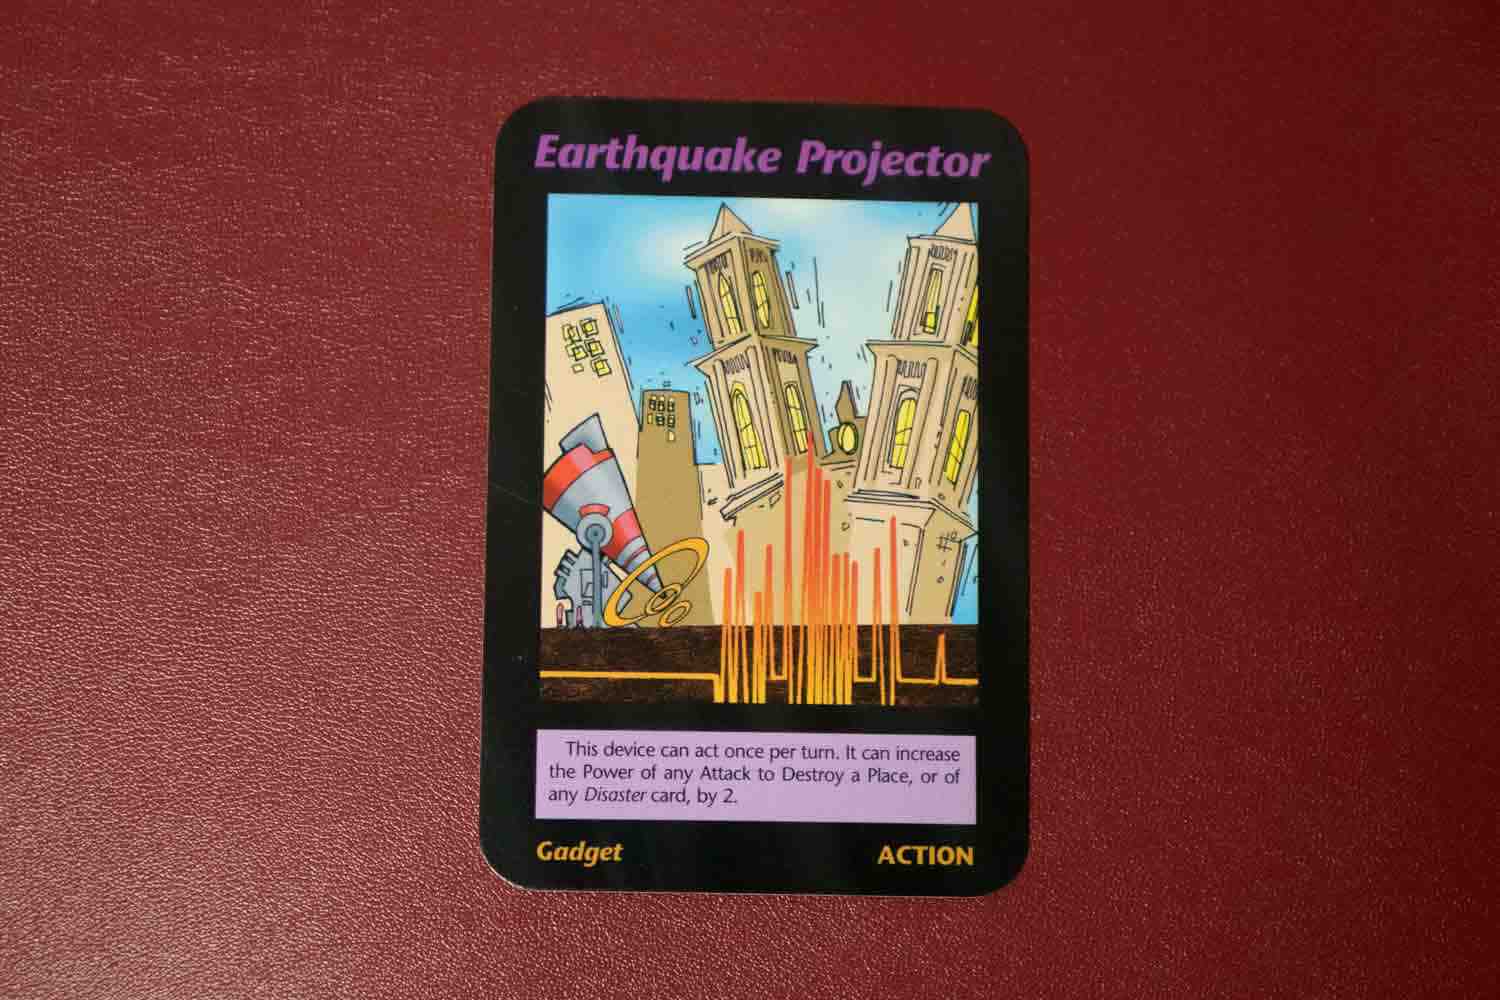 【イルミナティカード】Earthquake Projectorの詳細と都市伝説まとめ【人工地震発生装置HAARP】